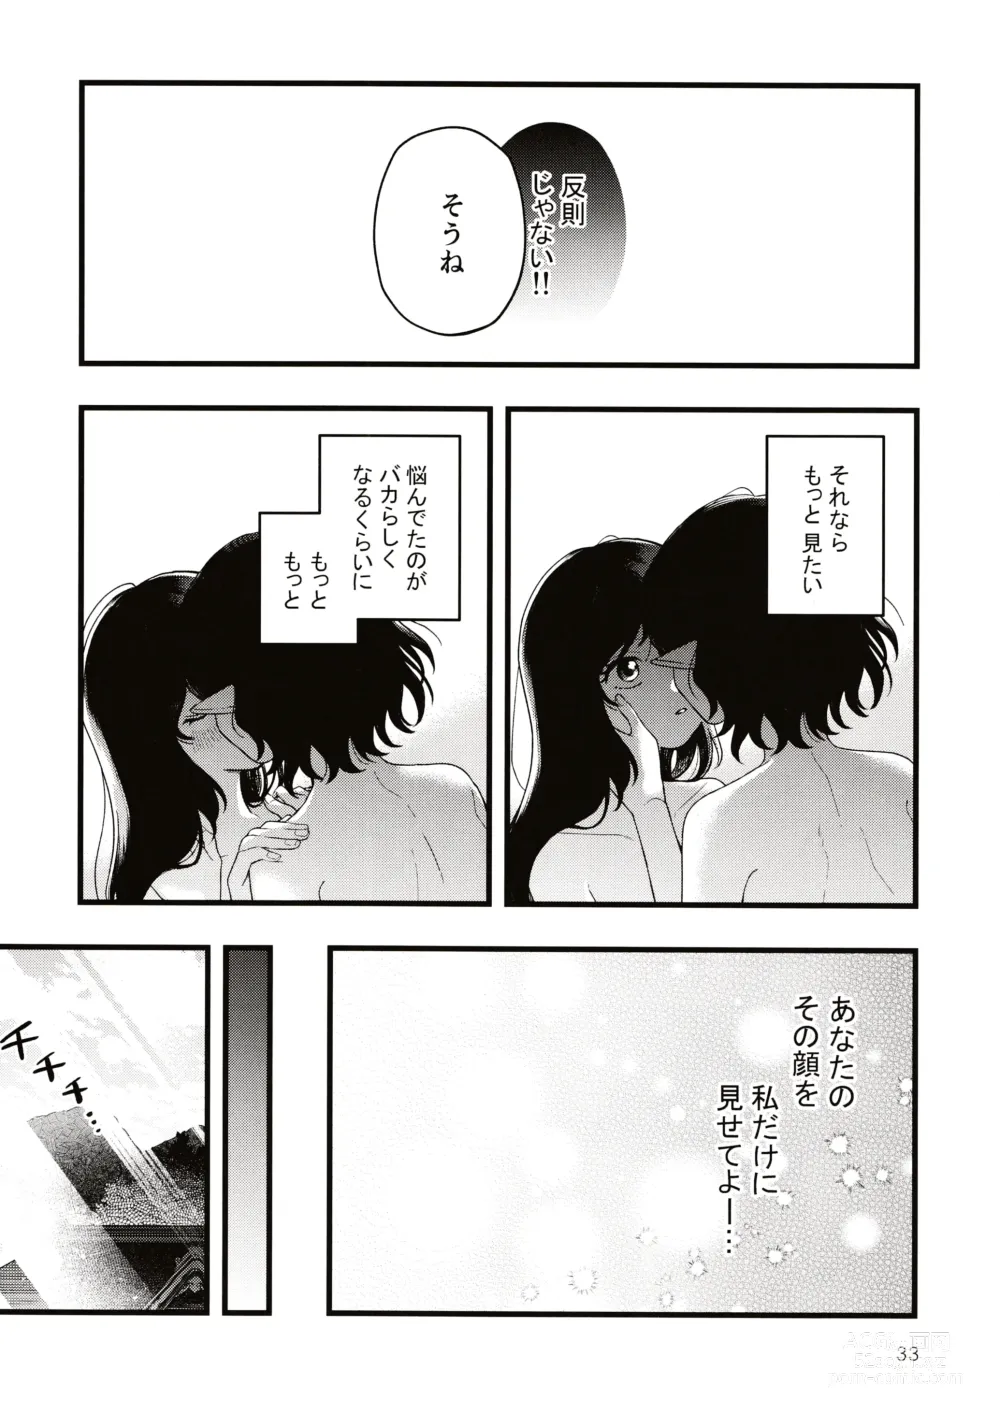 Page 32 of doujinshi Rubeus no Kankai